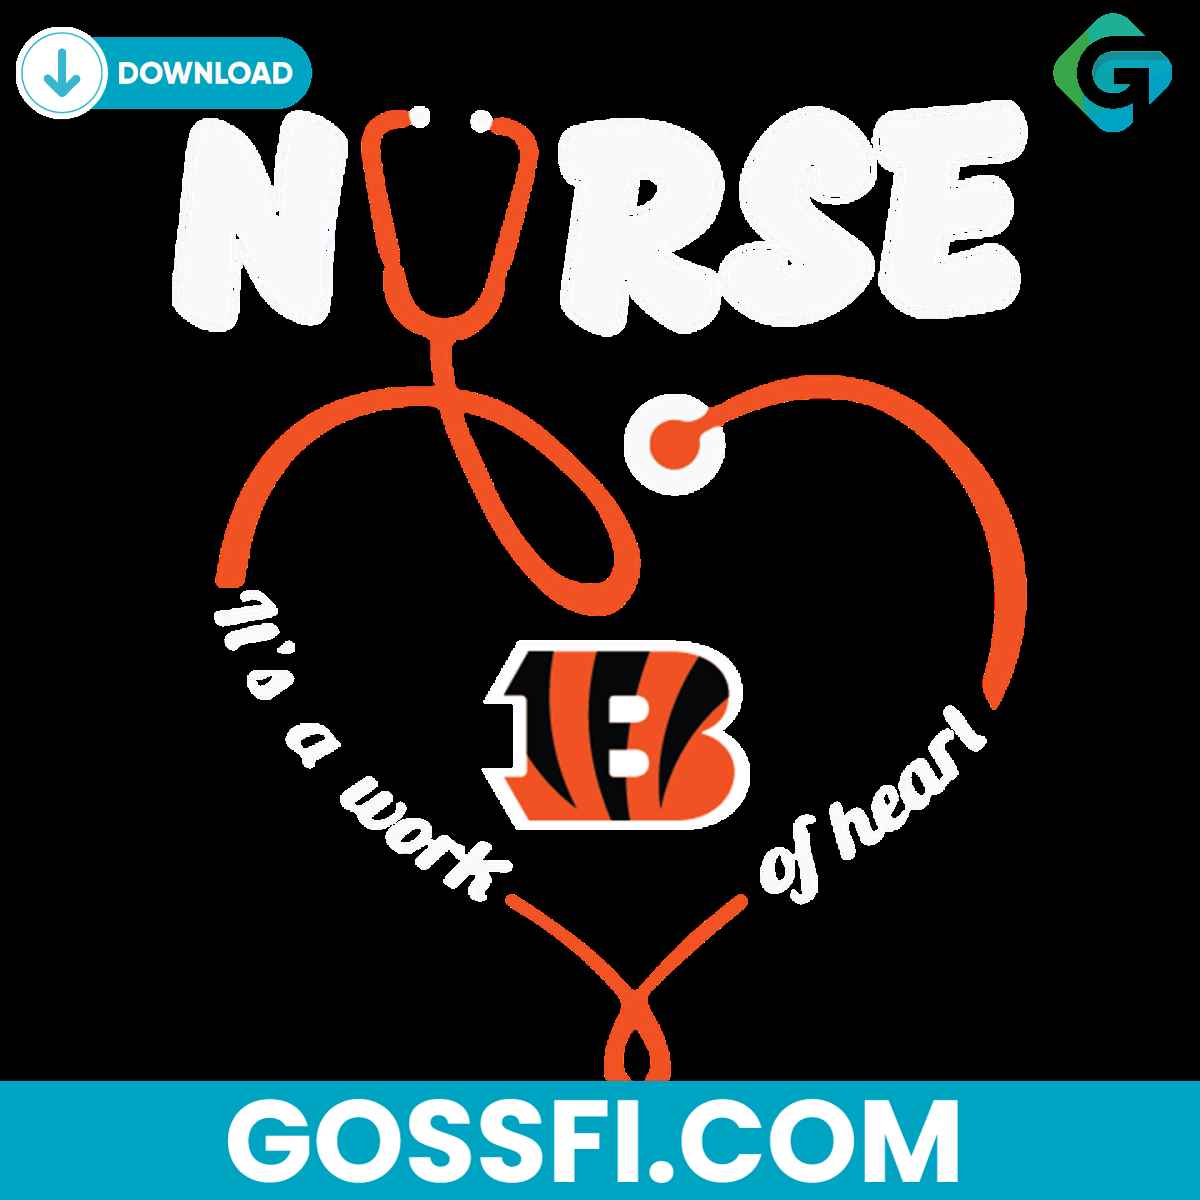 nurse-it-is-a-work-of-heart-cincinnati-bengals-svg